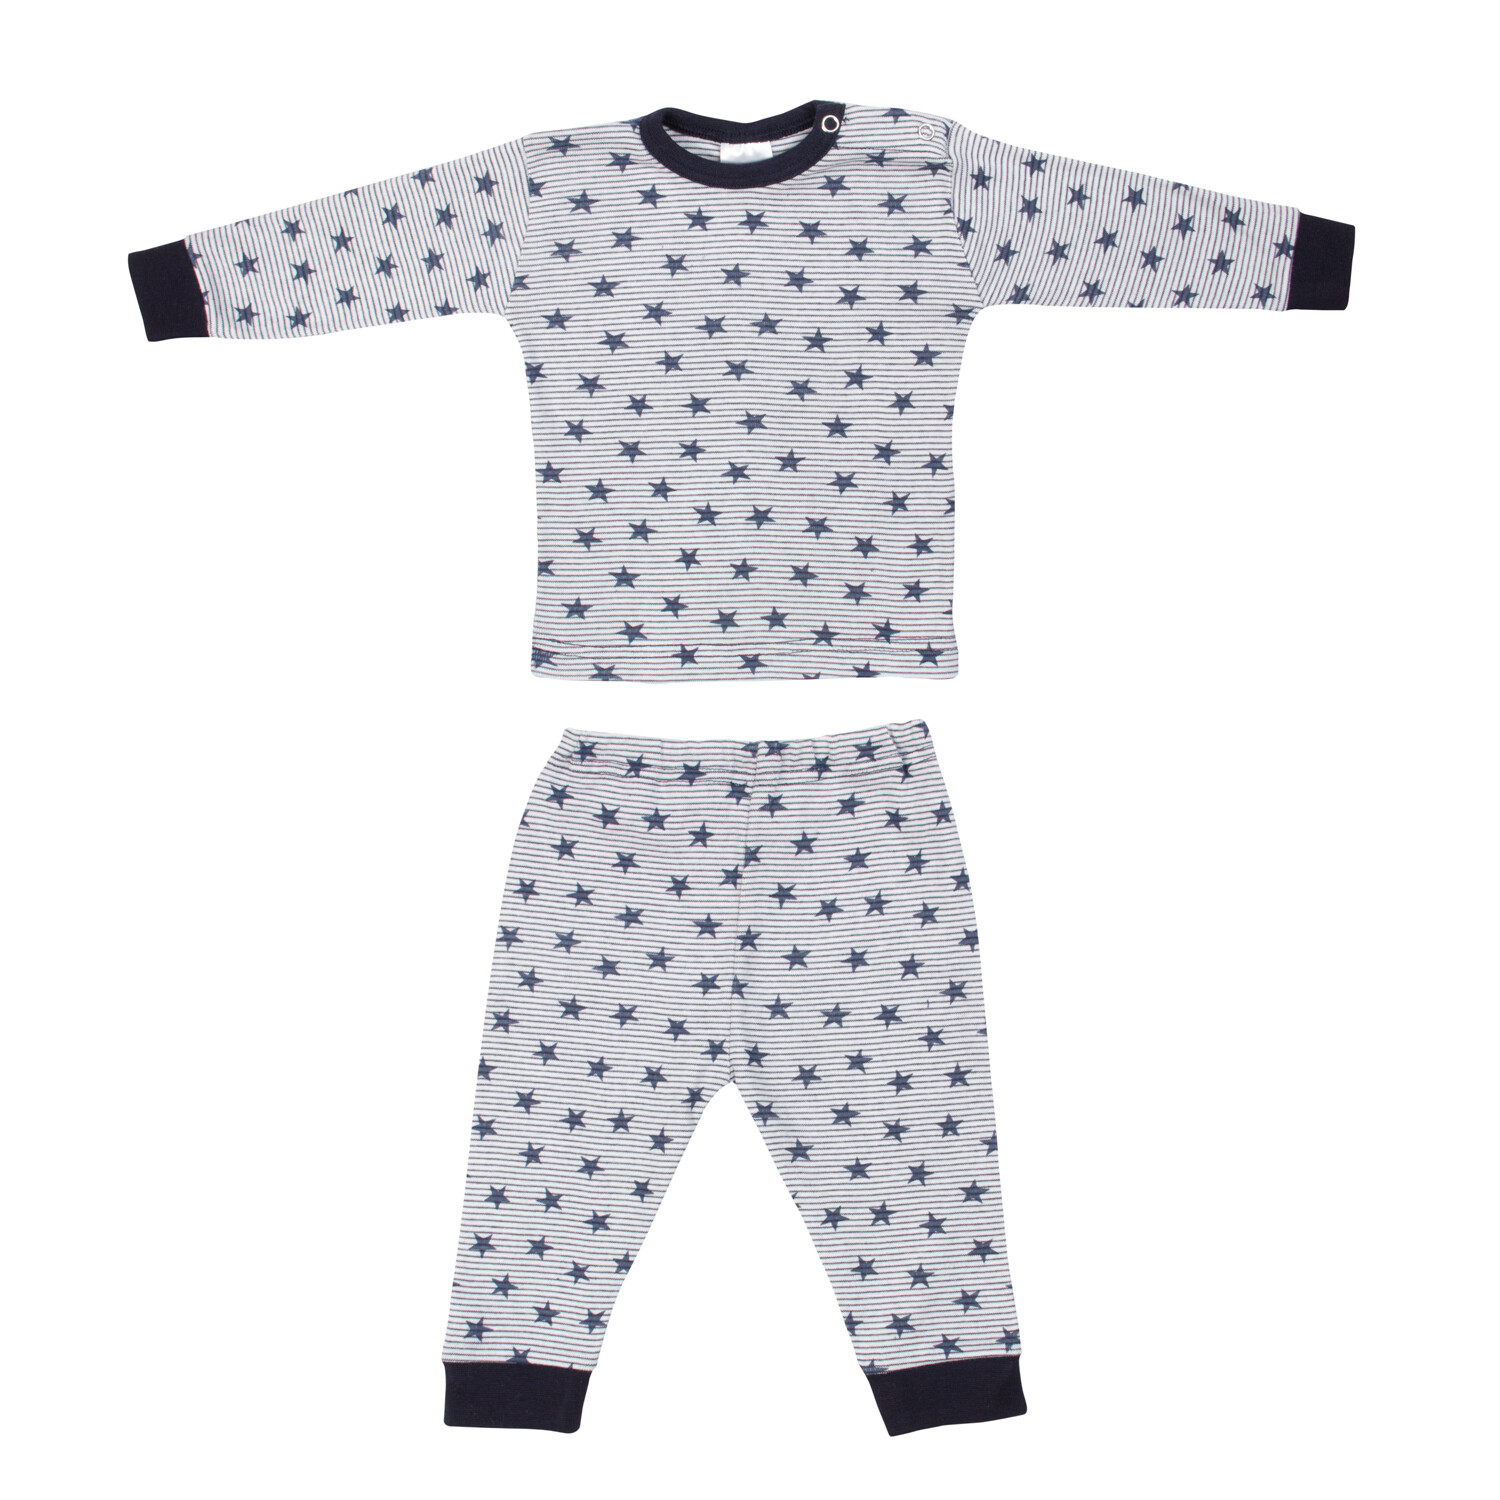 (24-019) Baby pyjama Stripe star marine 86/92